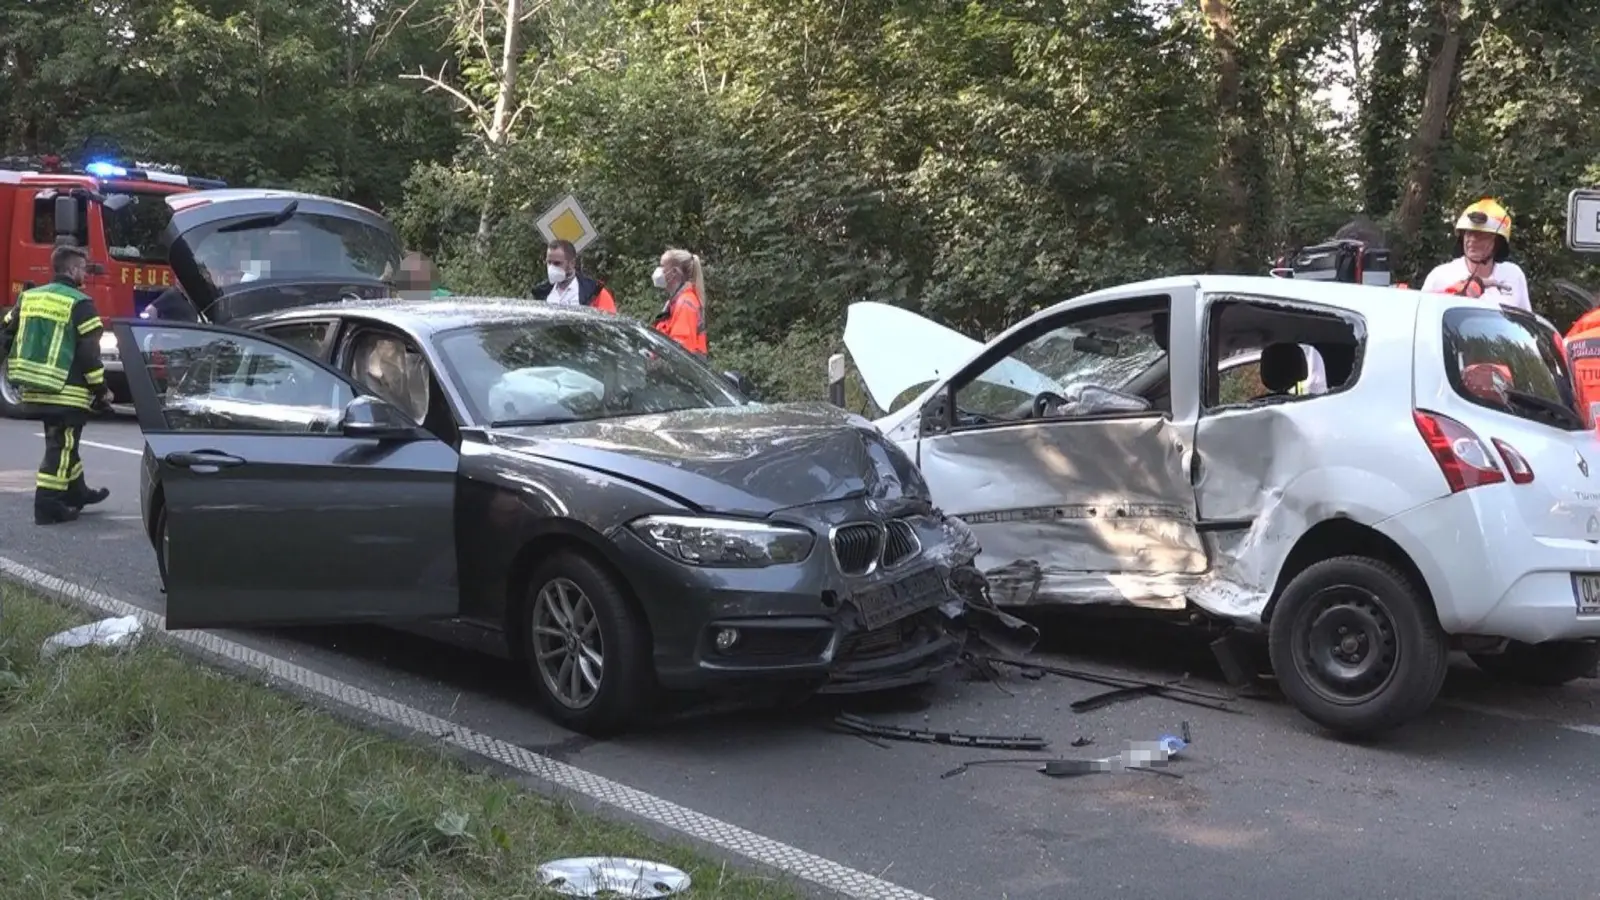 Rettungskräfte stehen nach einem Unfall an zwei verbeulten Autos. Die Zahl der Verkehrsunfälle ist in diesem Jahr deutlich gestiegen. (Foto: NWM-TV/dpa)